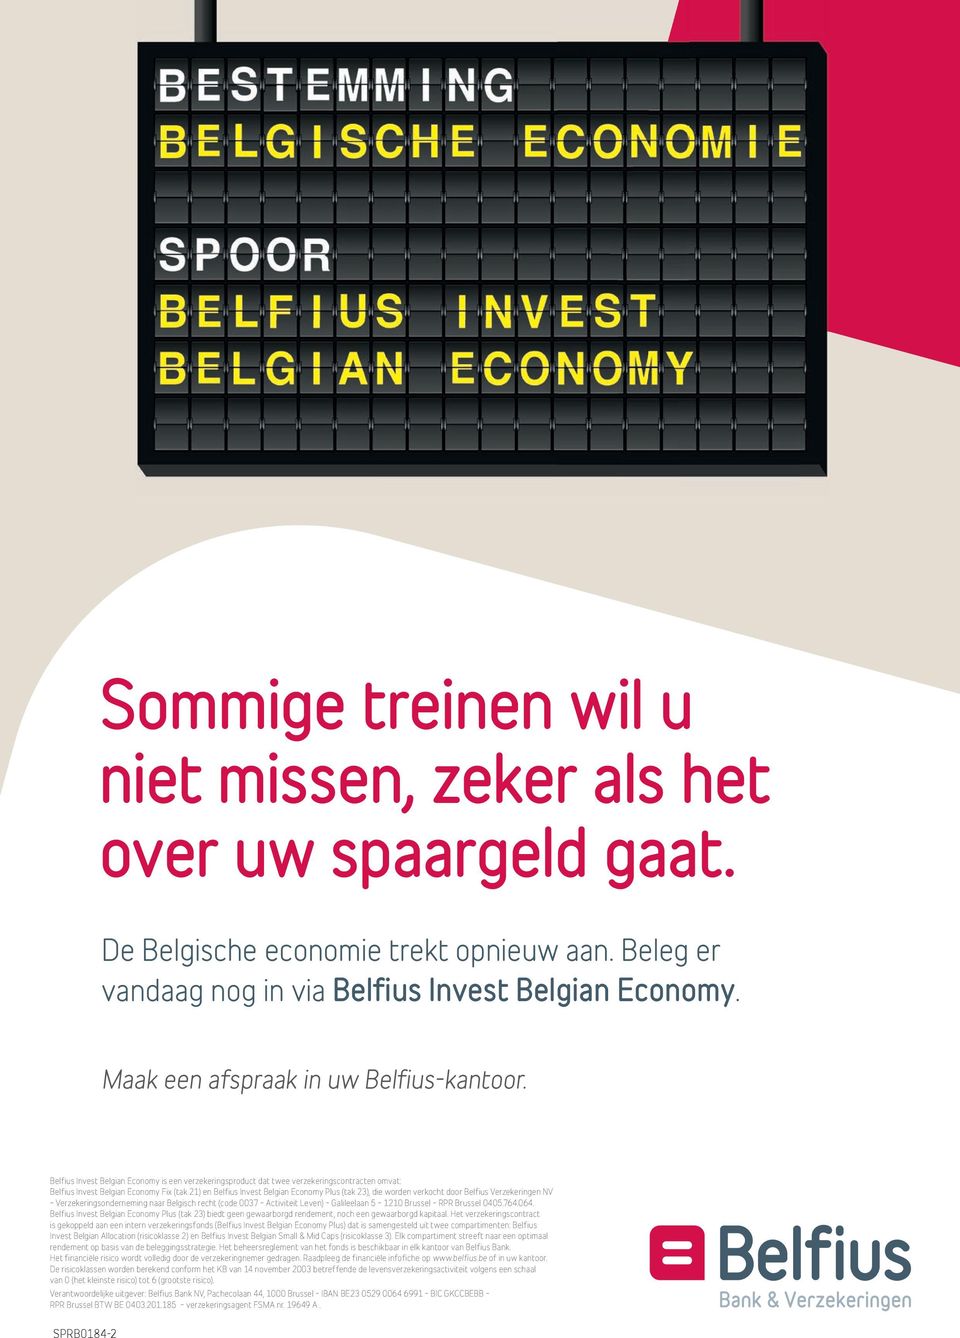 Belfius Invest Belgian Economy is een verzekeringsproduct dat twee verzekeringscontracten omvat: Belfius Invest Belgian Economy Fix (tak 21) en Belfius Invest Belgian Economy Plus (tak 23), die